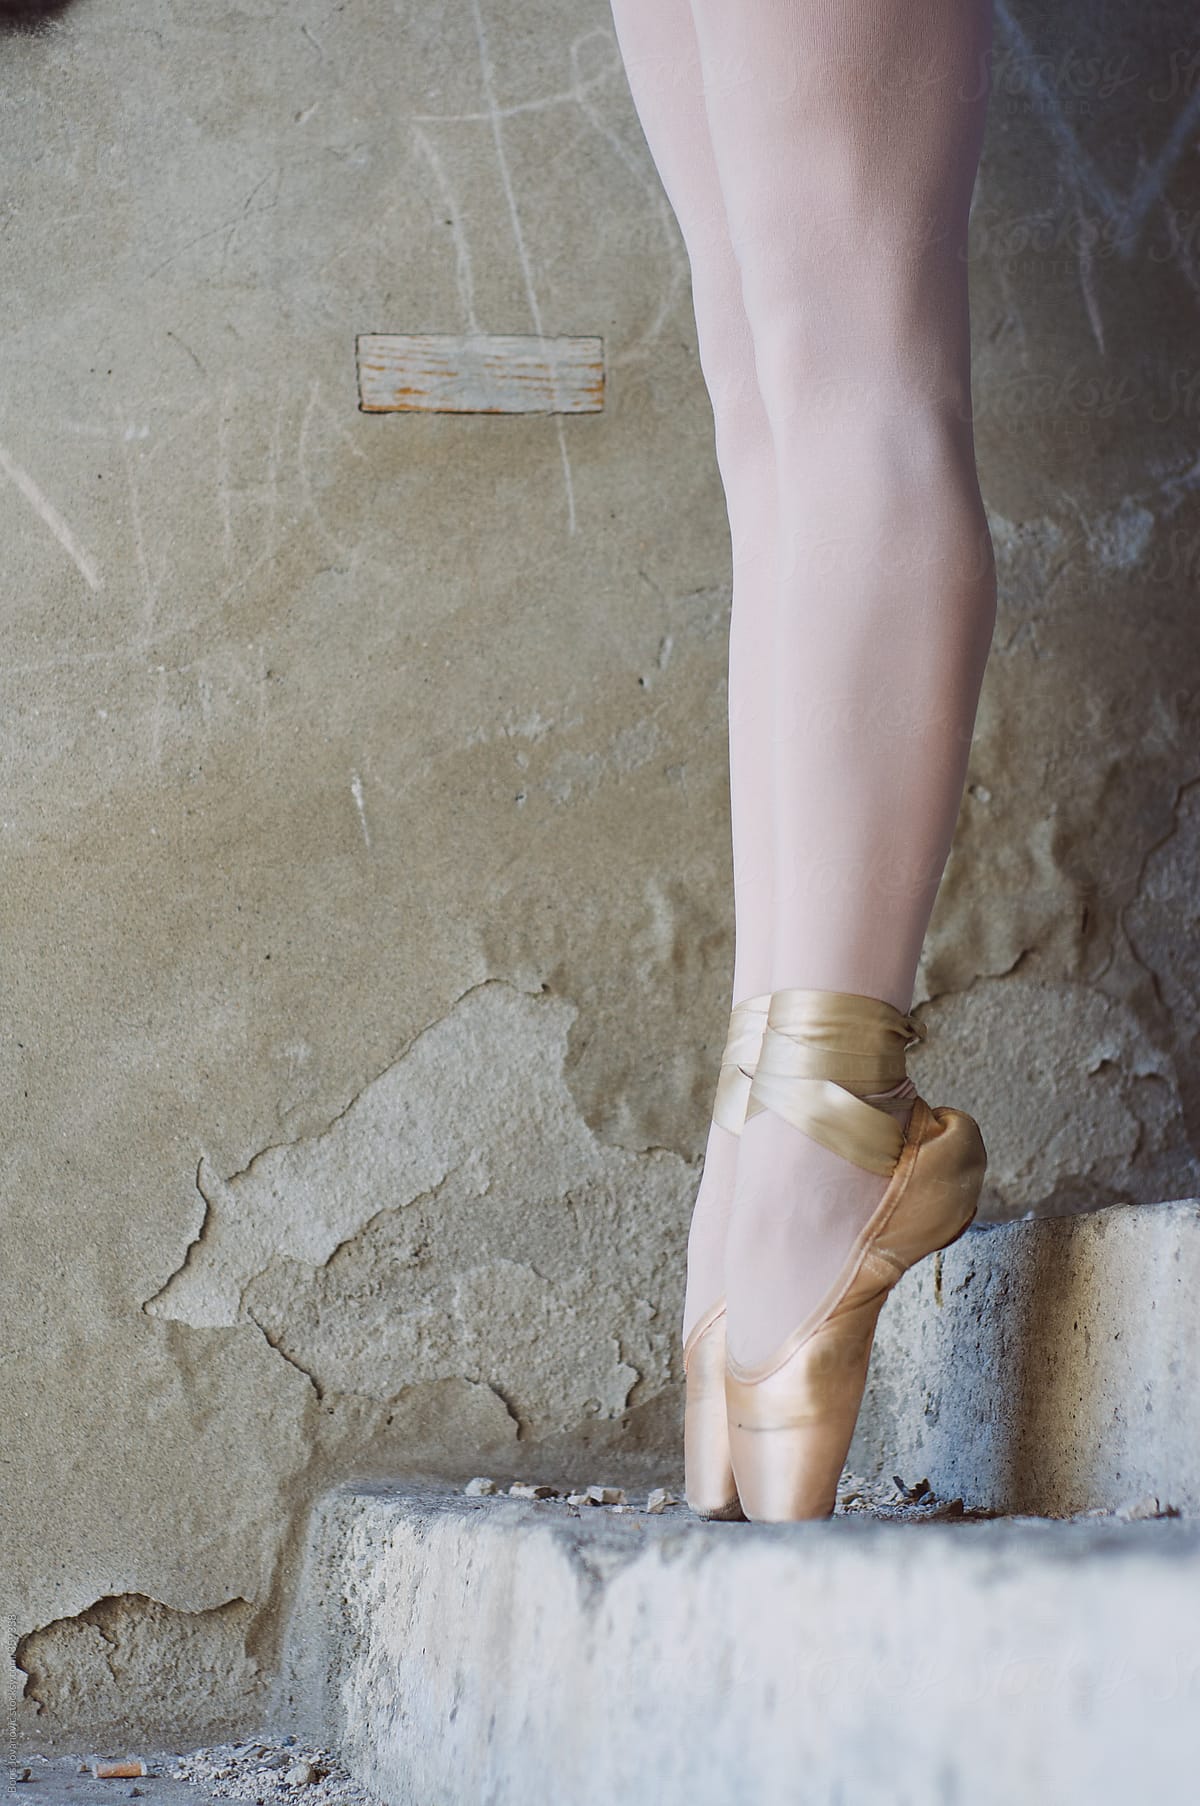 Ballerinas legs on old stairs